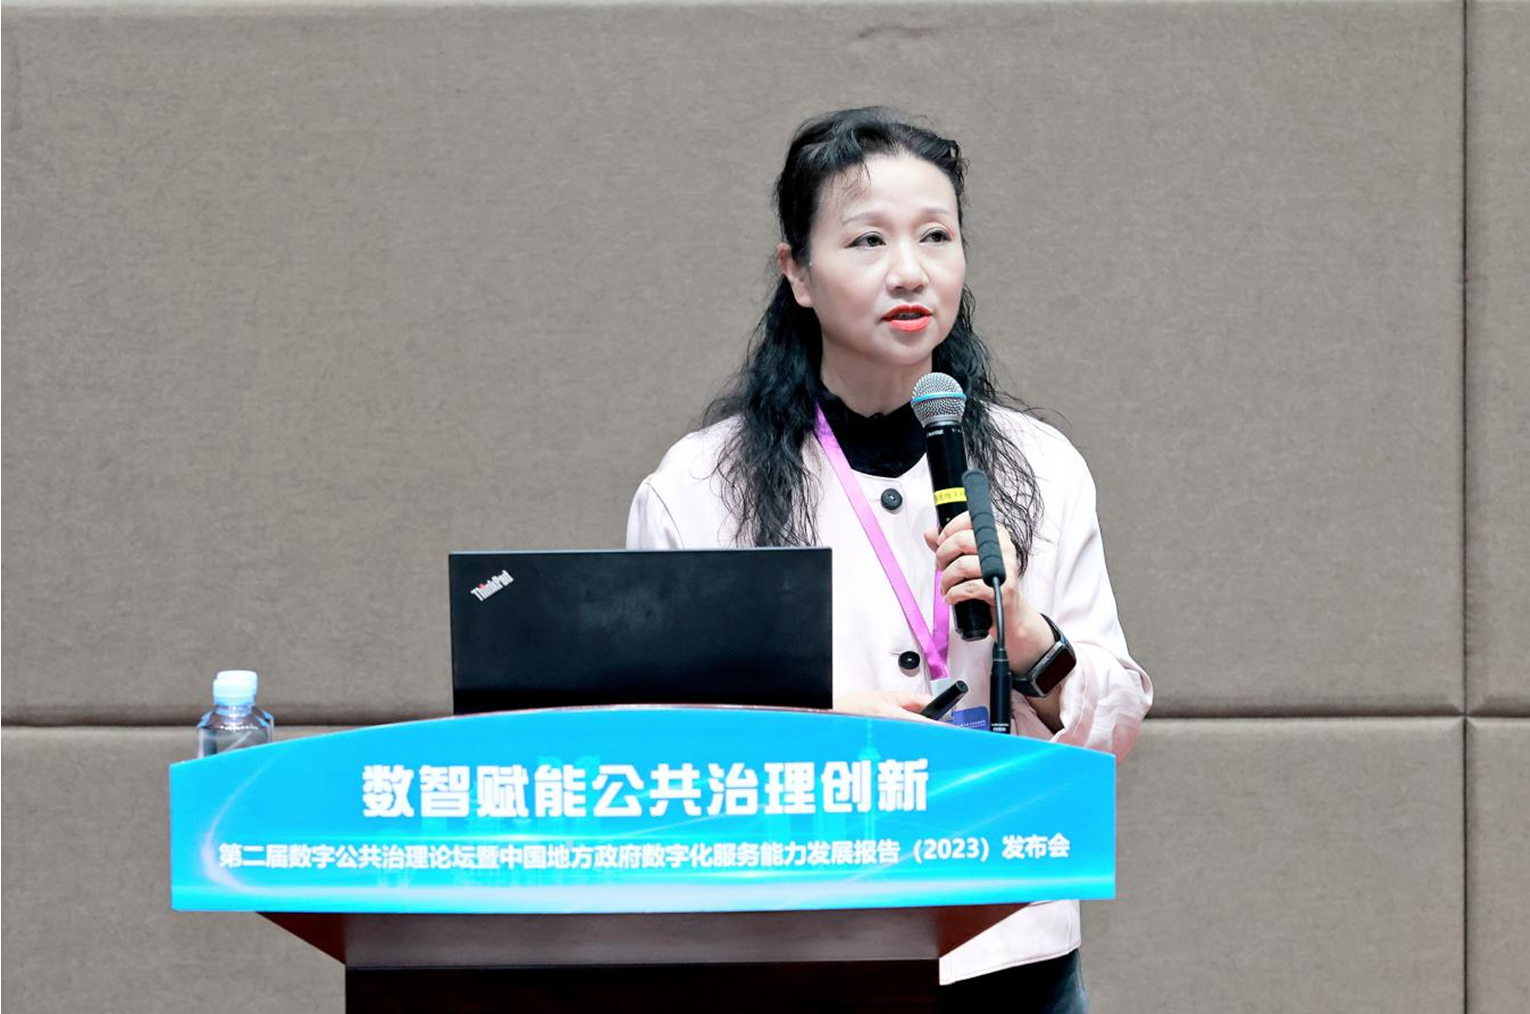 贵州省大数据发展管理局局长景亚萍教授做主旨报告